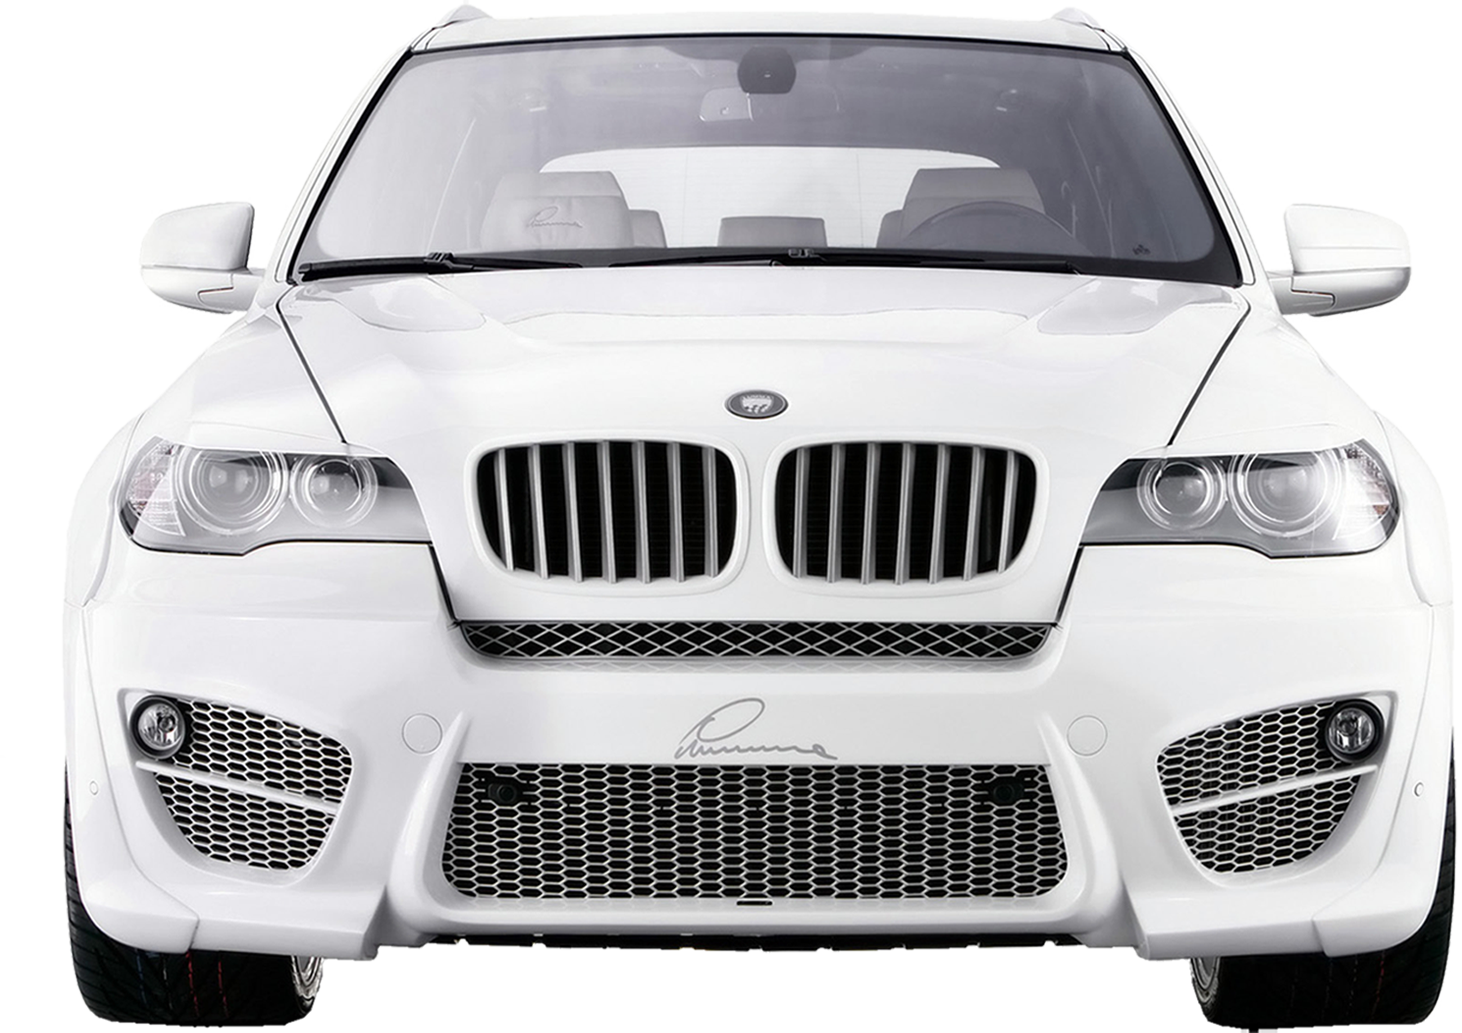 Ảnh png BMW mang đến cho bạn những trải nghiệm tuyệt vời nhất về xe hơi. Với động cơ mạnh mẽ và thiết kế sang trọng, BMW là một trong những nhà sản xuất xe uy tín nhất thế giới. Hãy chiêm ngưỡng những bức ảnh PNG BMW đẹp nhất để tìm hiểu thêm về thế giới xe hơi.